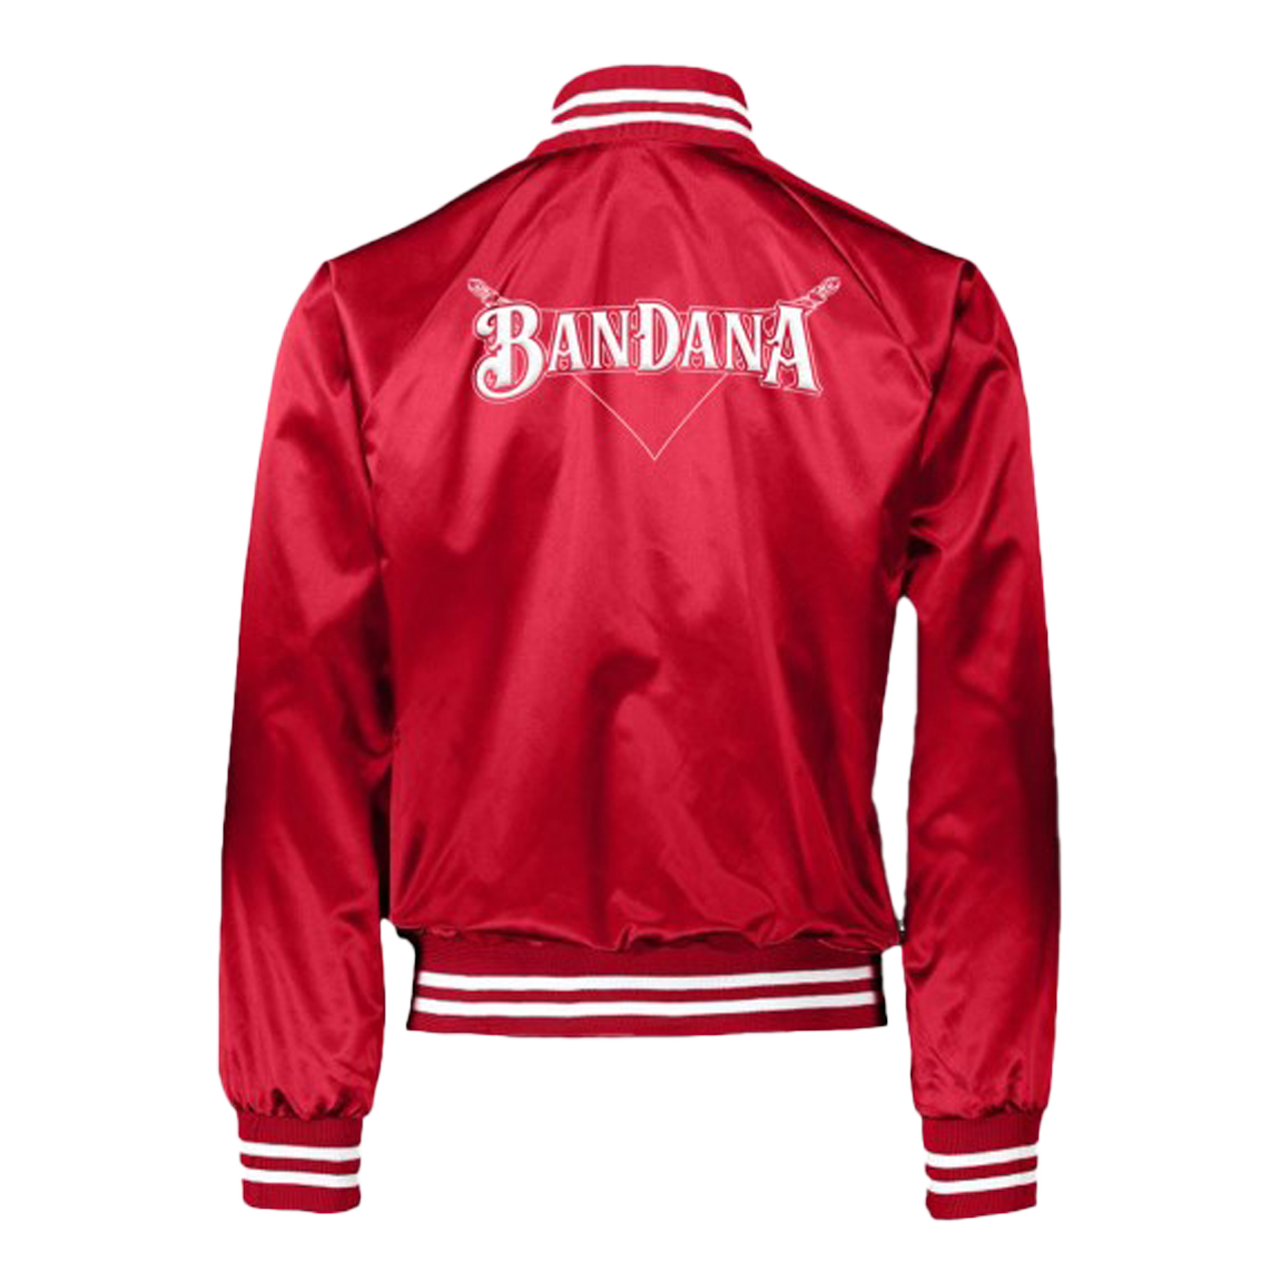 Red Bandana Jacket